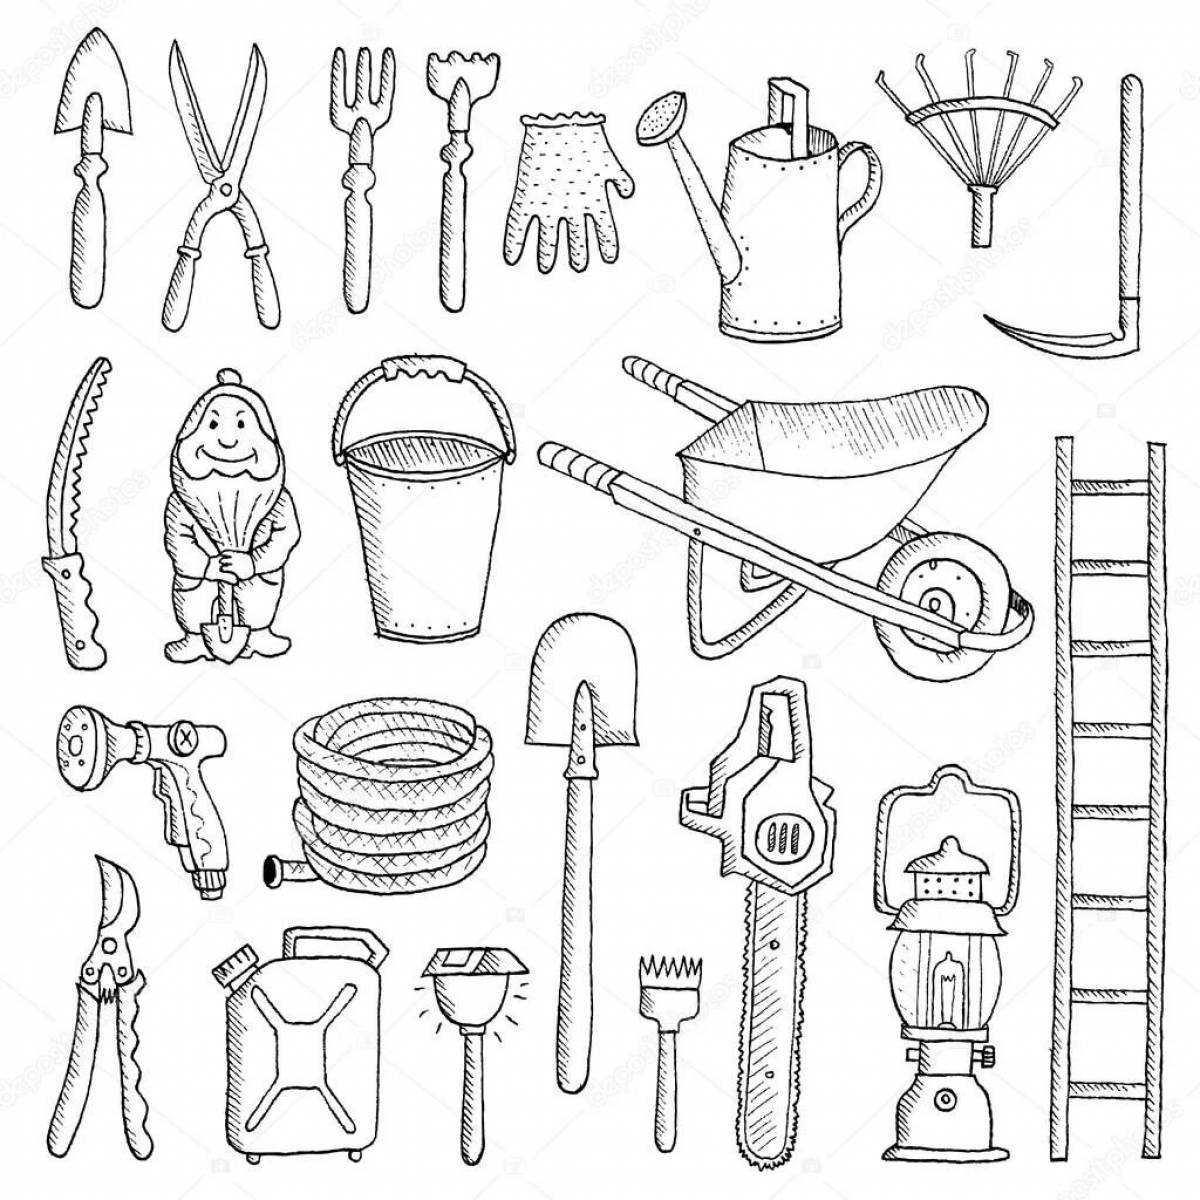 Tools tools #1